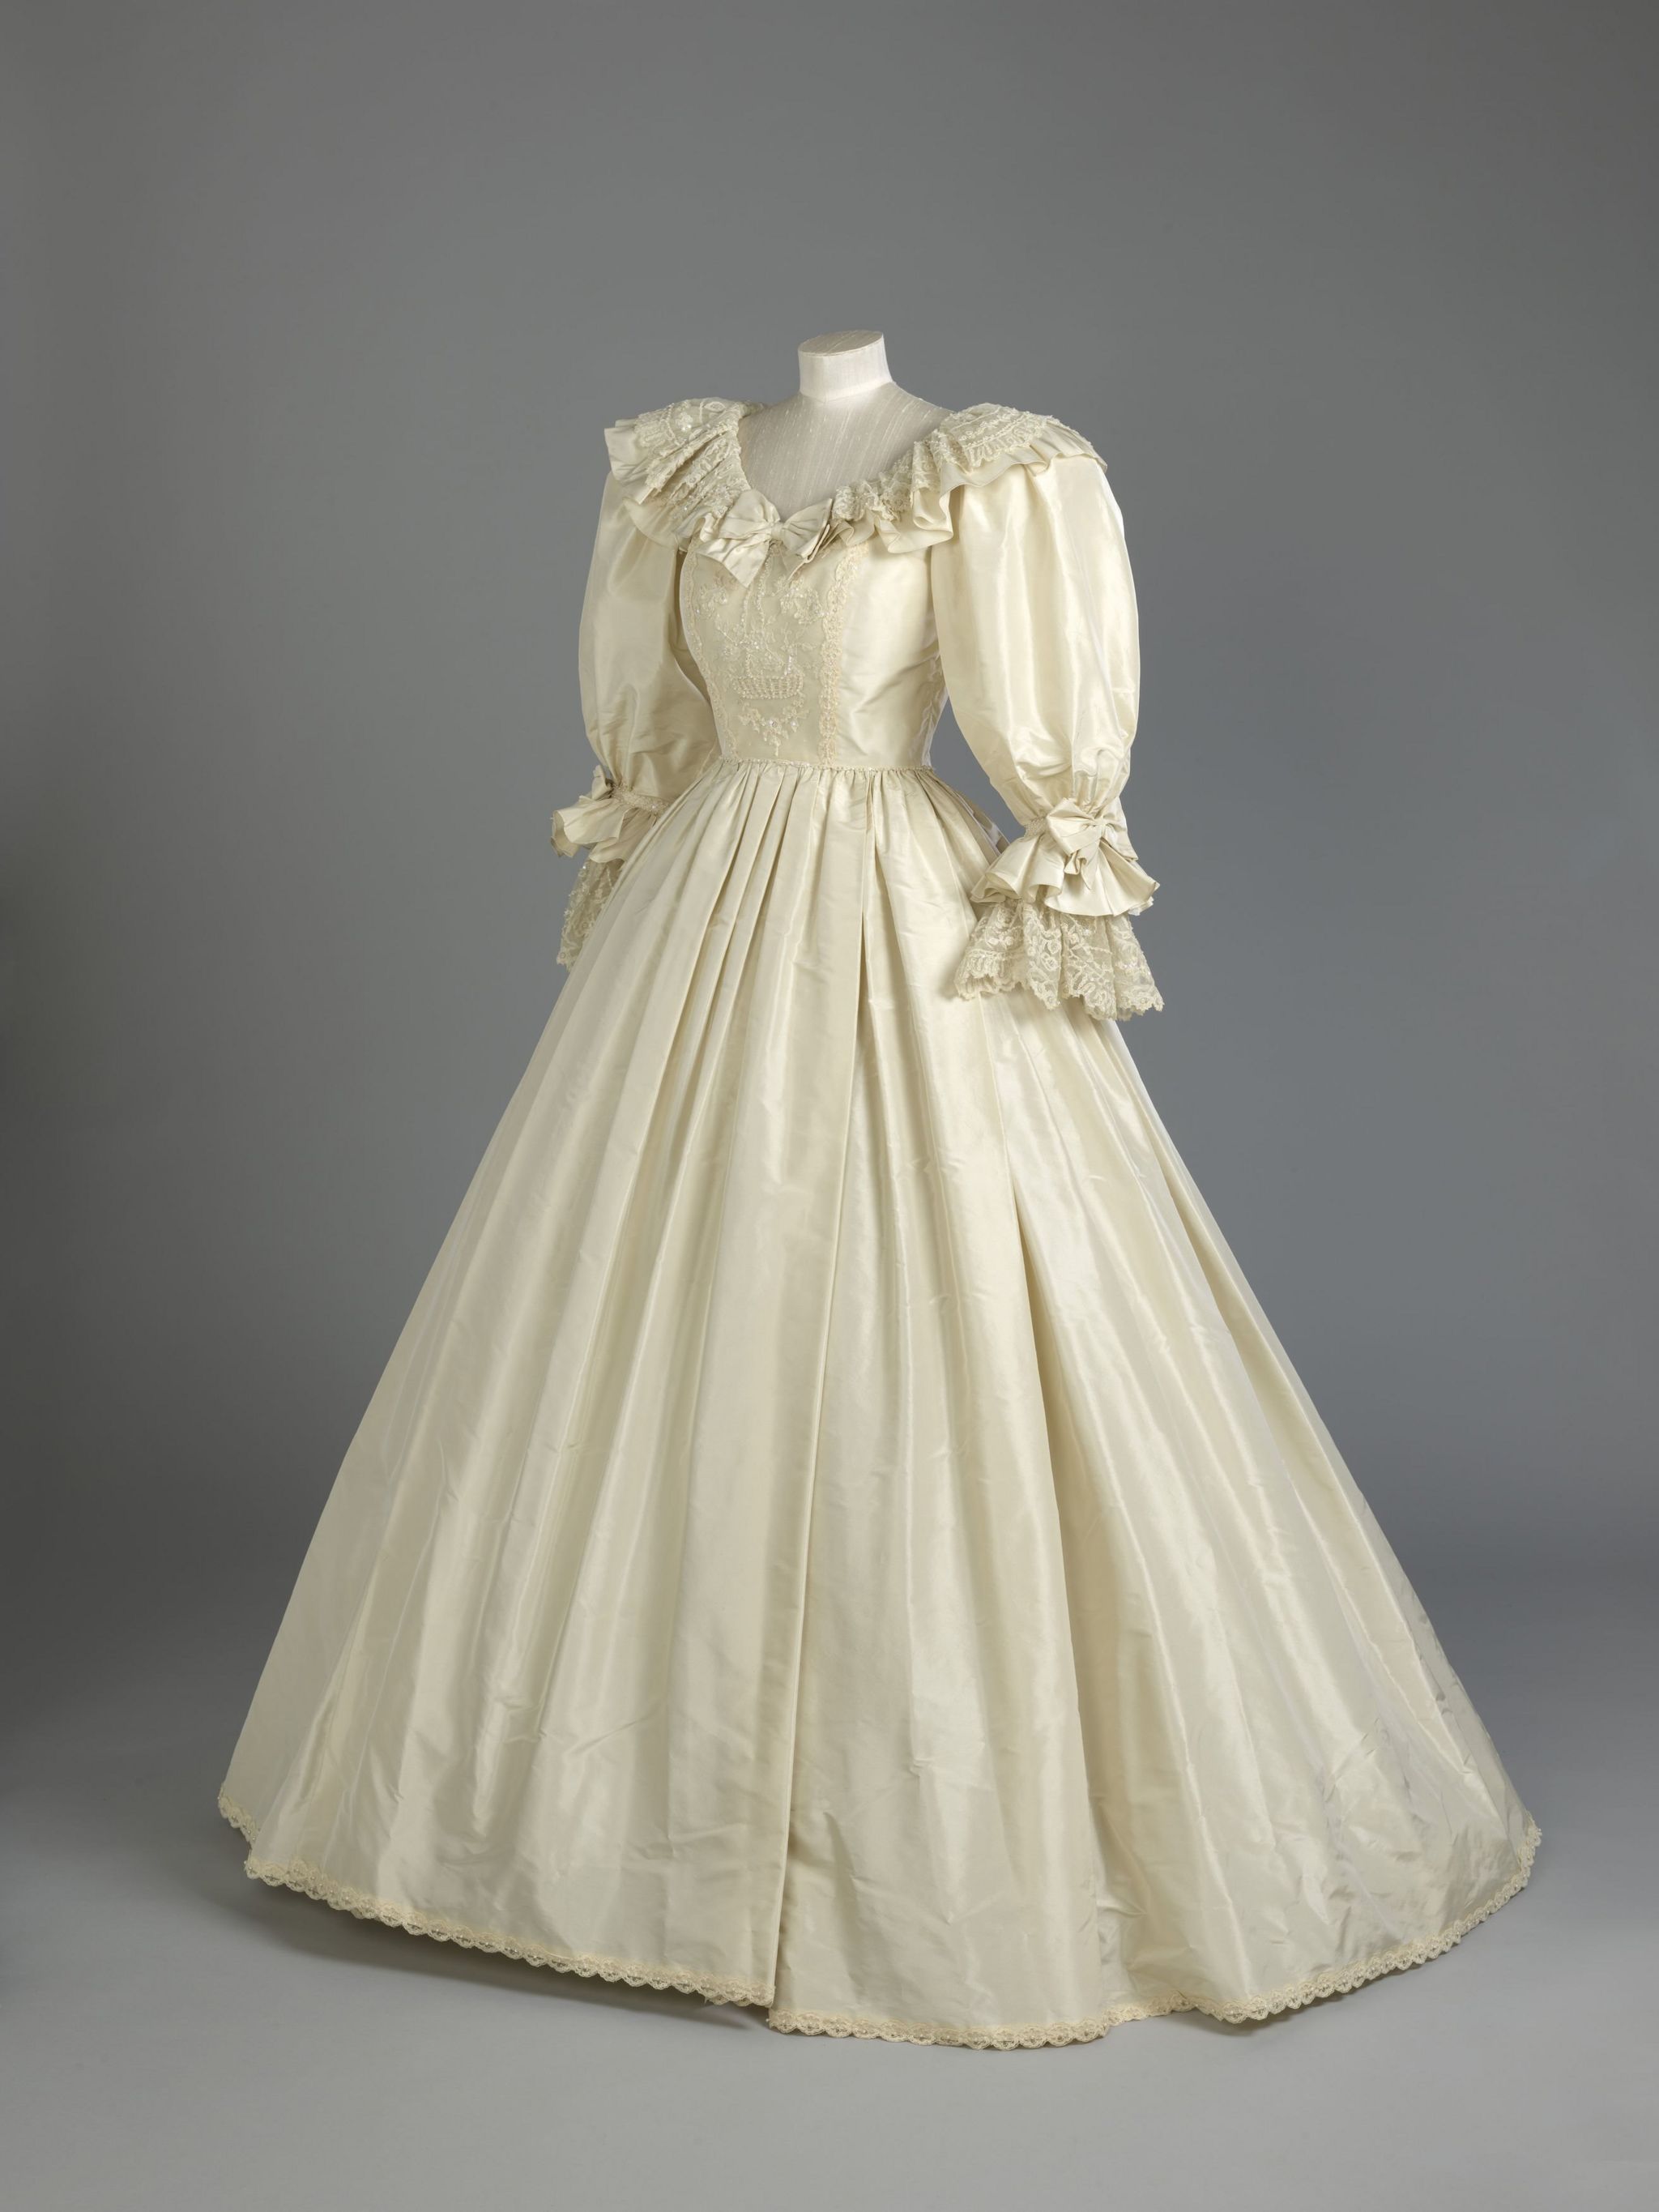 Princess Diana's wedding dress going on display at Kensington Palace - BBC  News